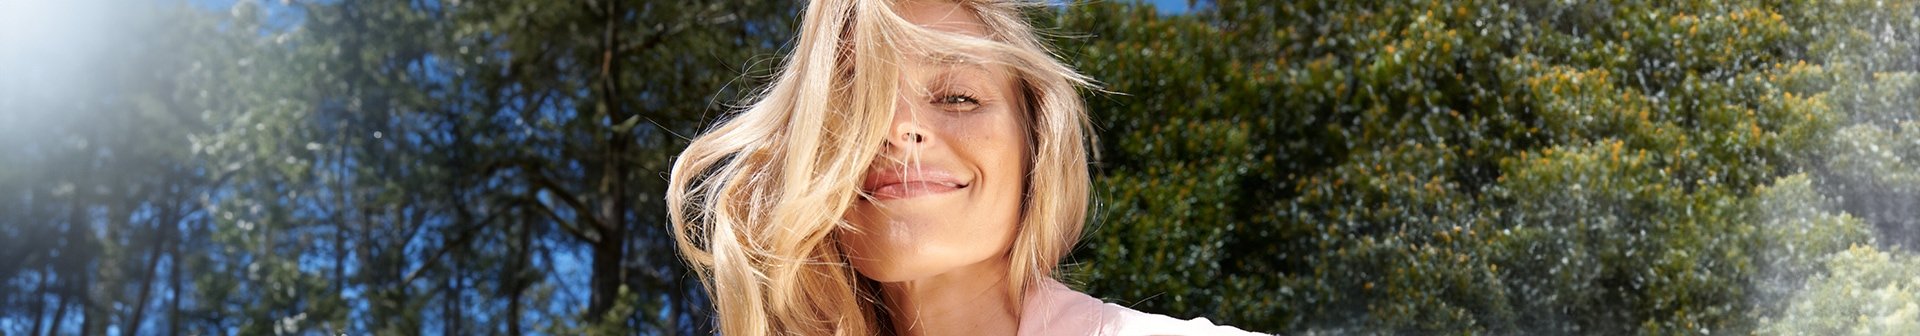 Eine junge Frau mit langen blonden Haaren lächelt in der Sonne